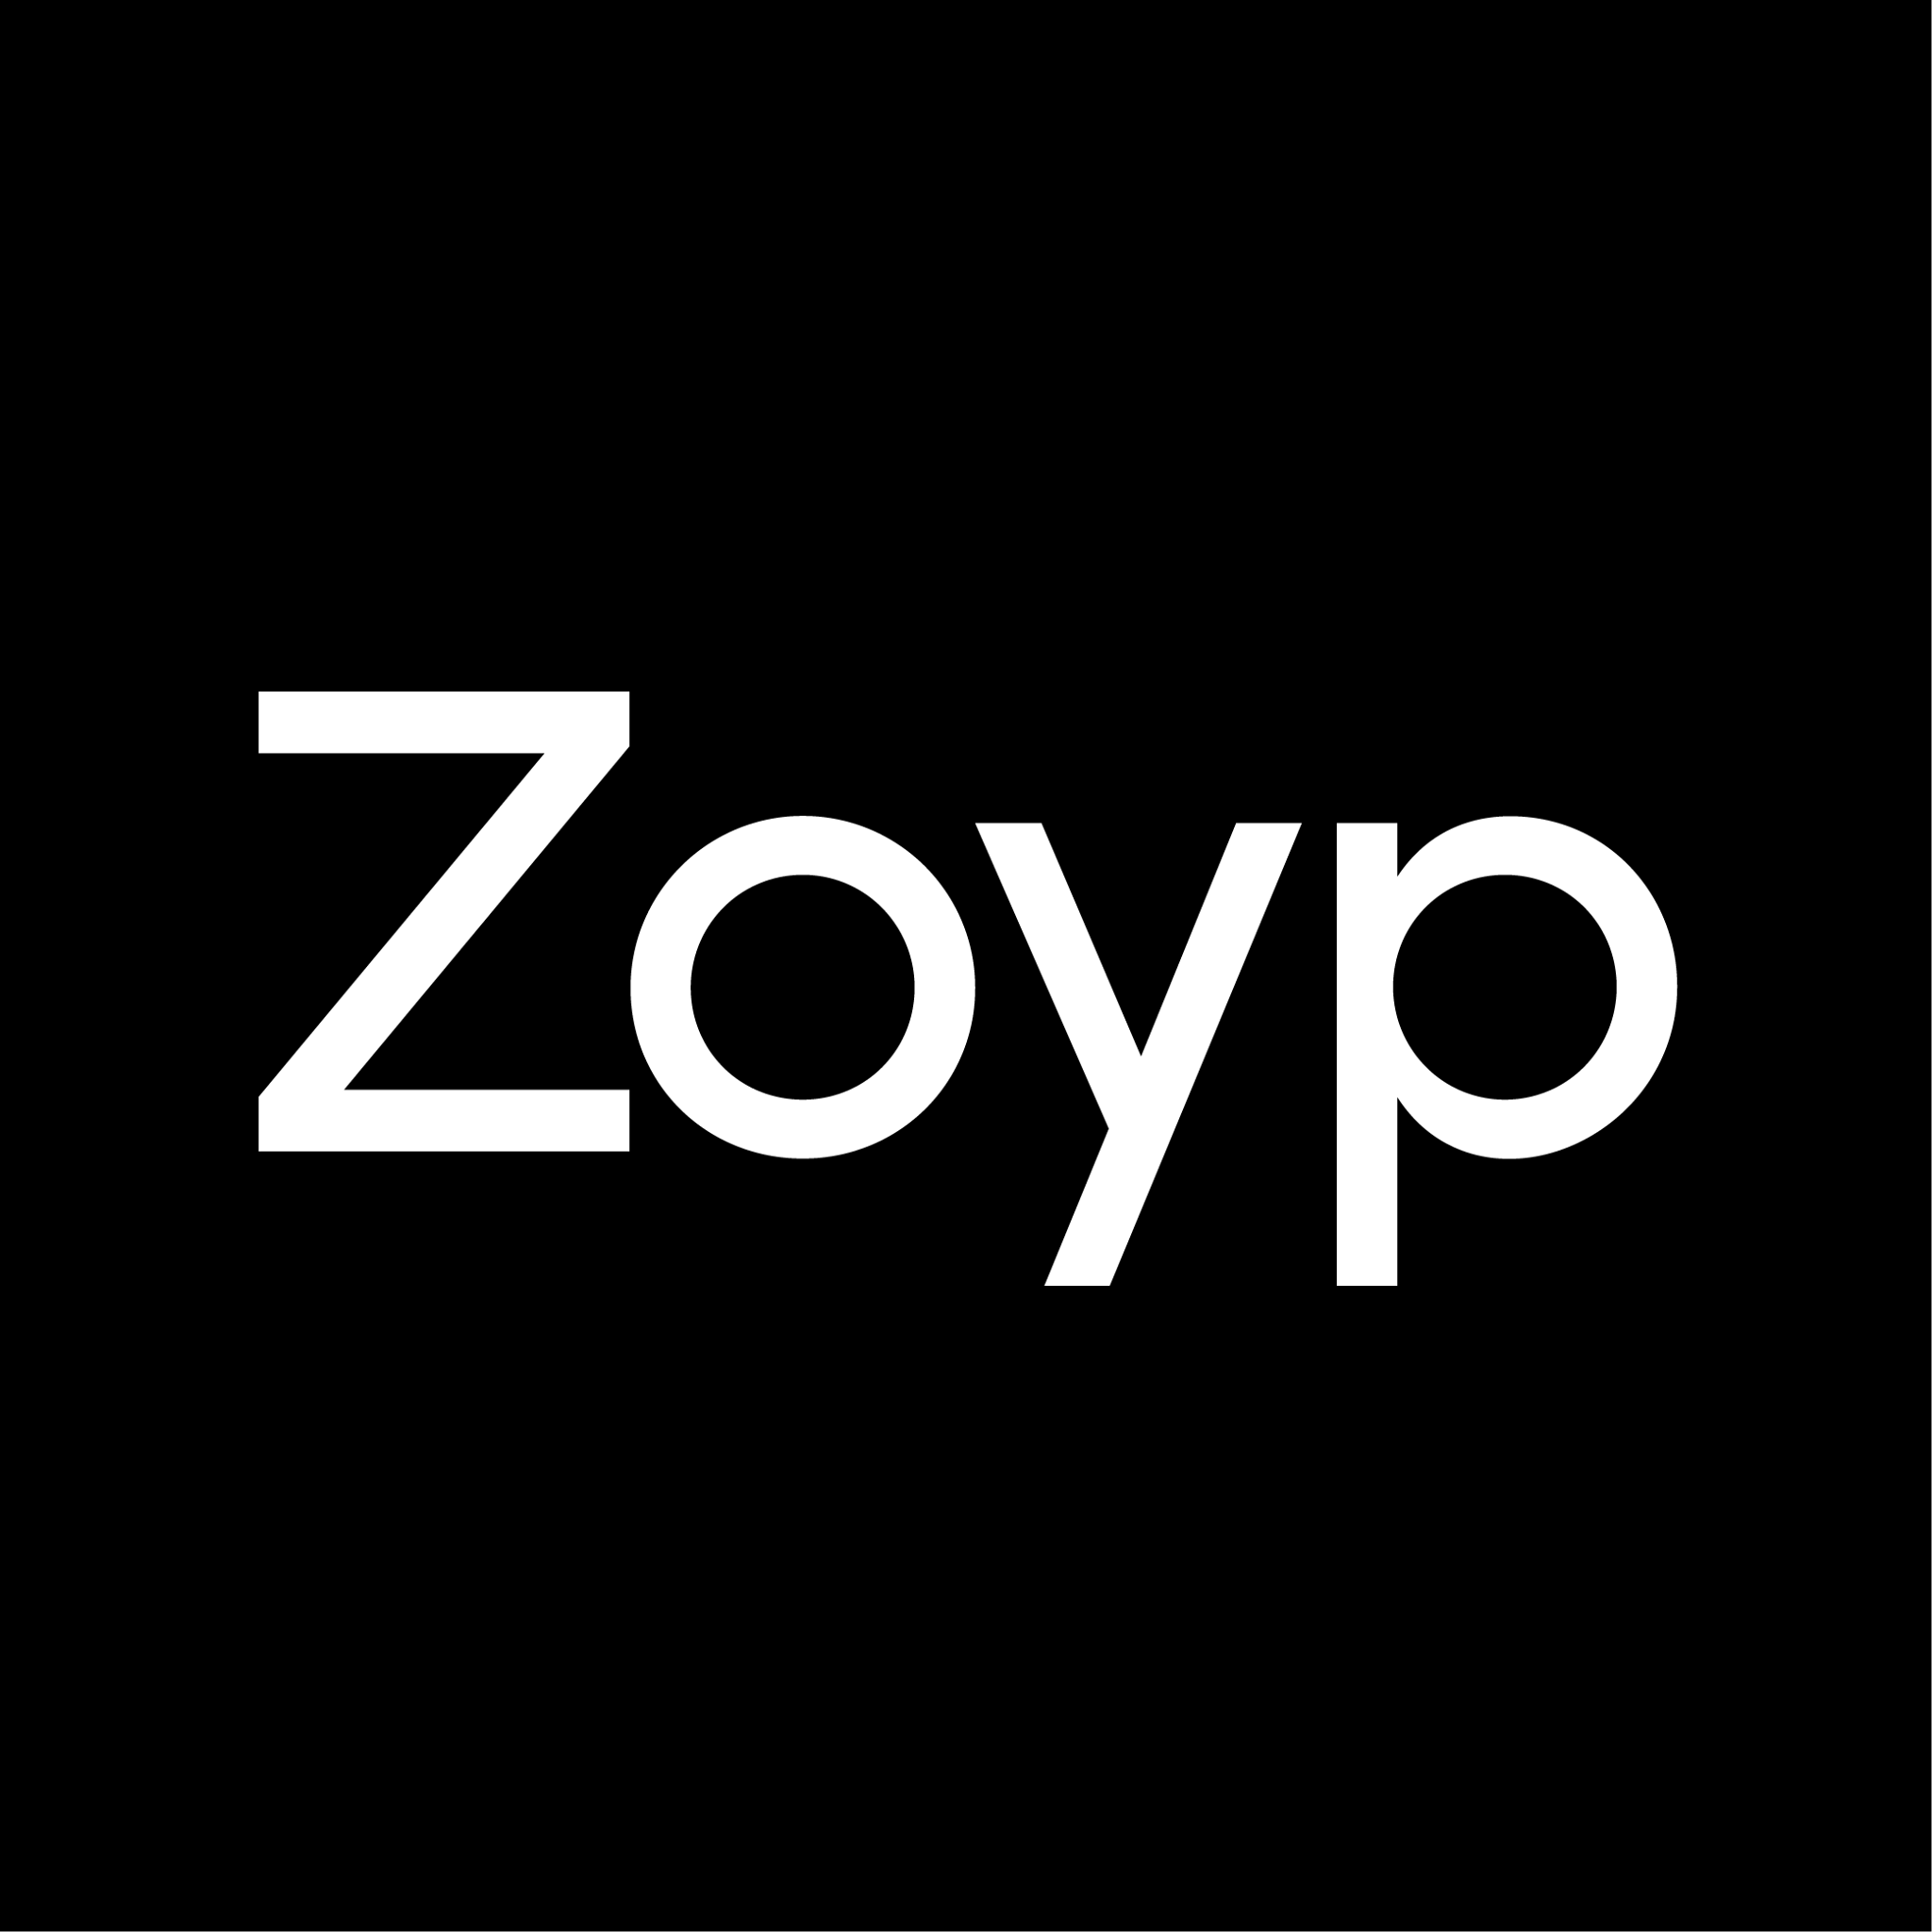 Logo of Zoyp Bradford